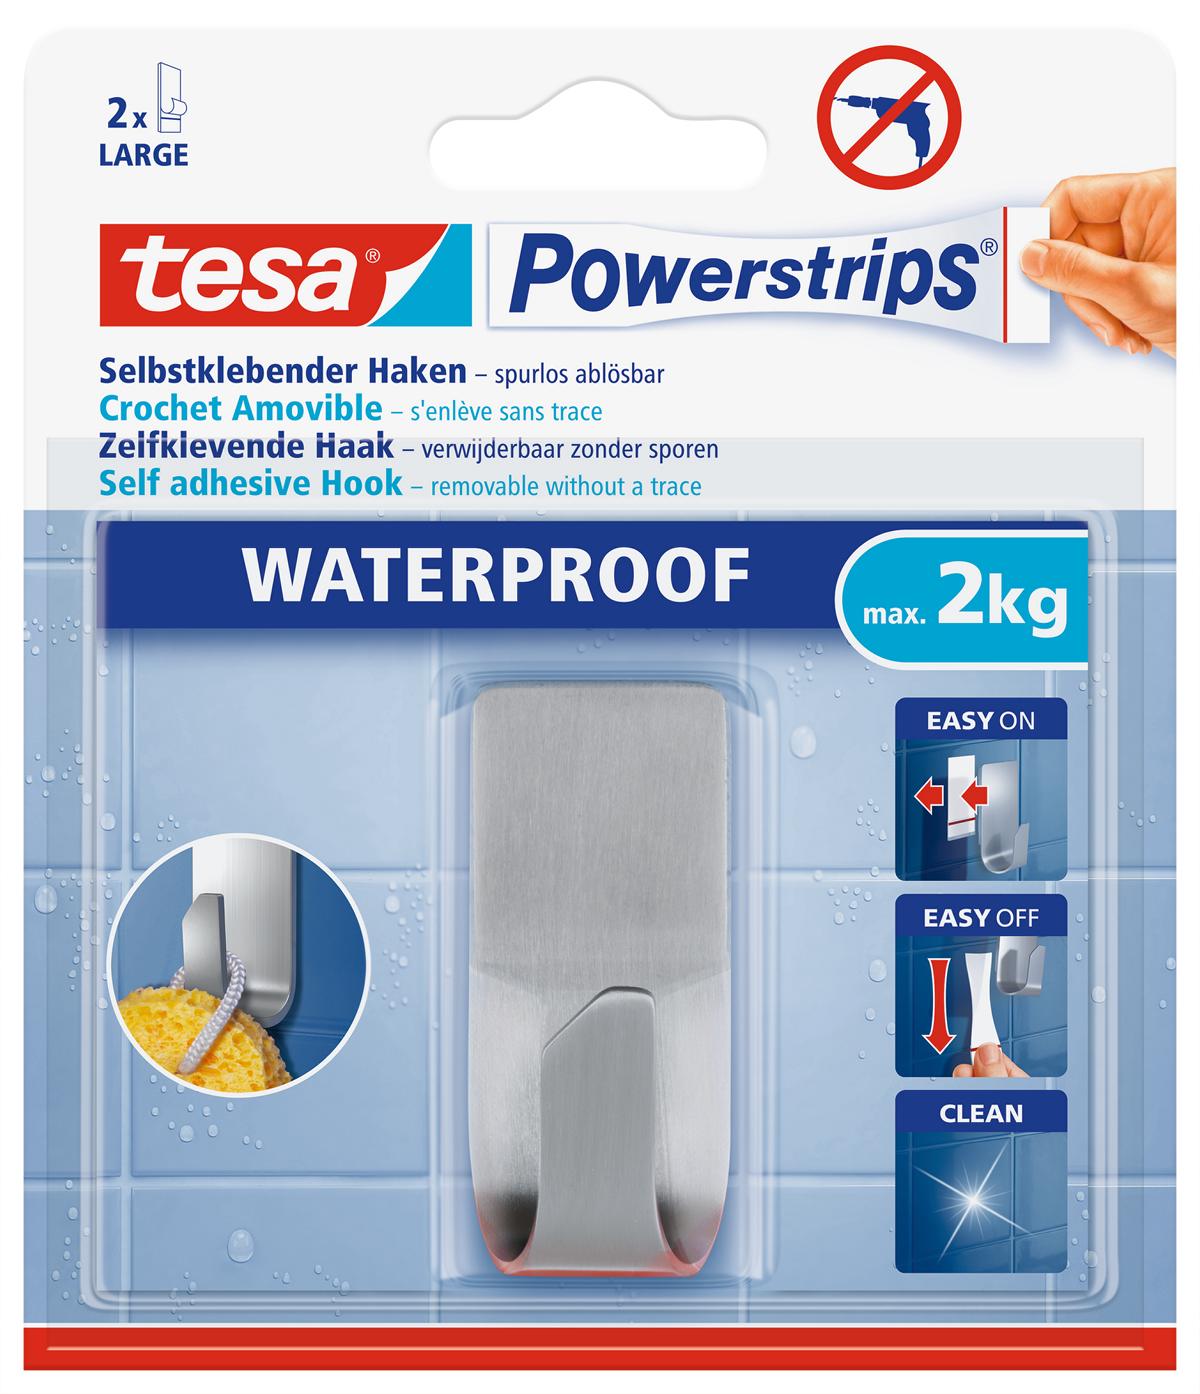 tesa Powerstrips Selbstklebeneder Haken Waterproof Zoom, Metall